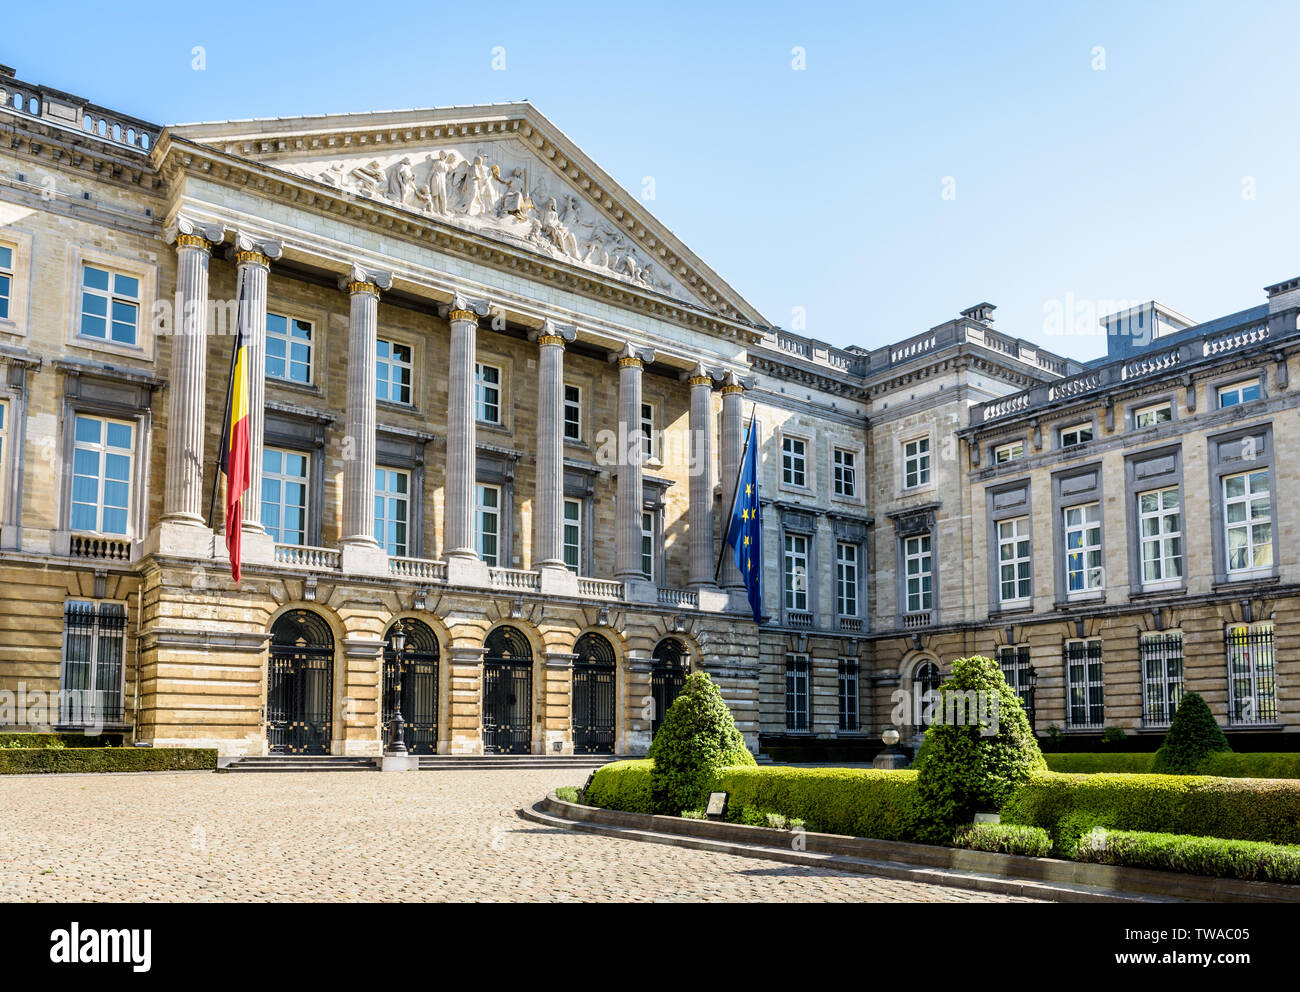 Drei Viertel Vorderansicht der Palast der Nation, dem Sitz des belgischen föderalen Parlaments in Brüssel, Belgien. Stockfoto